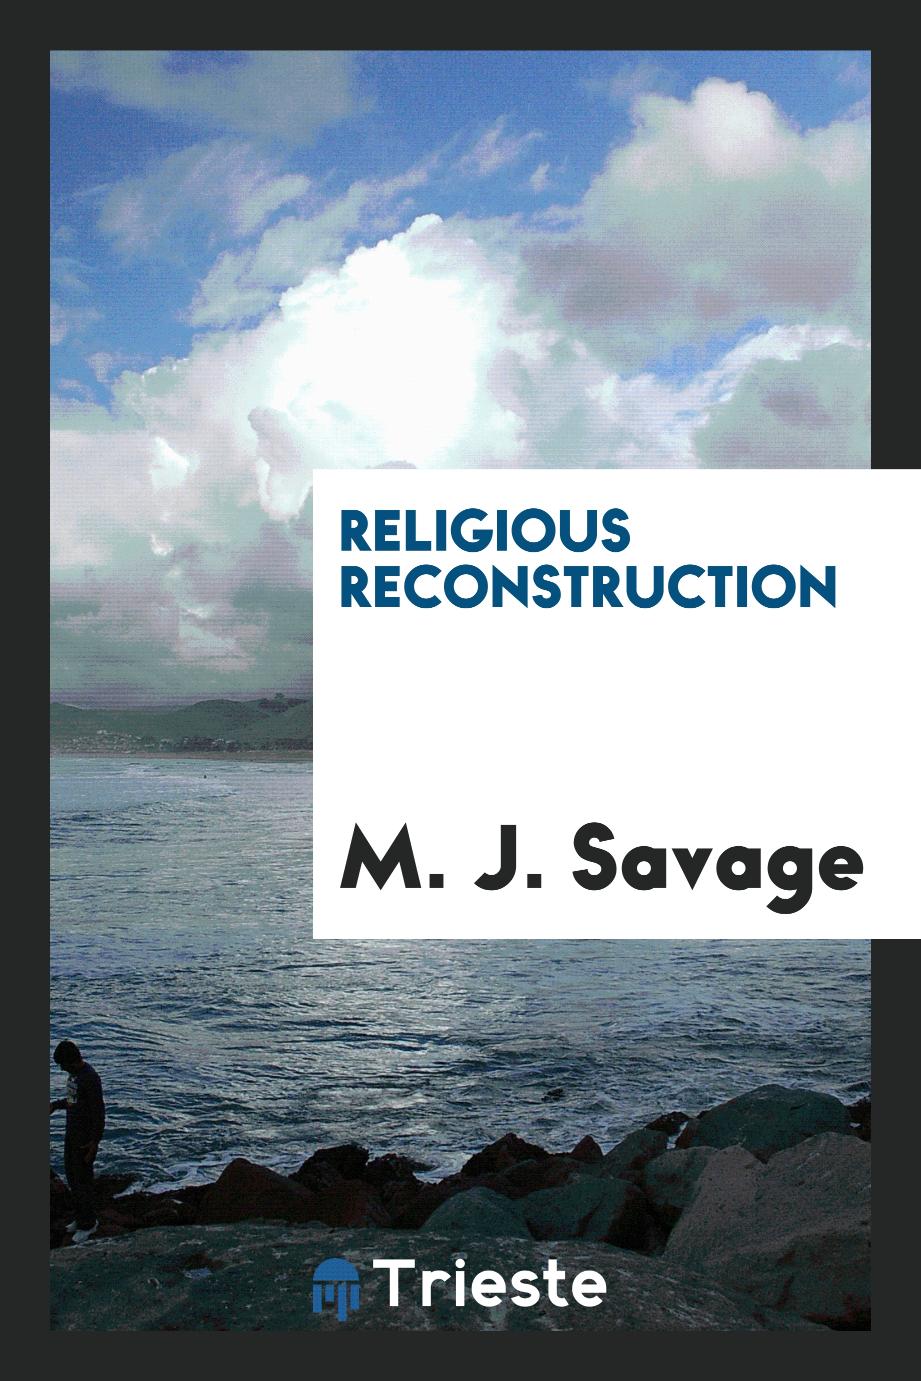 Religious reconstruction